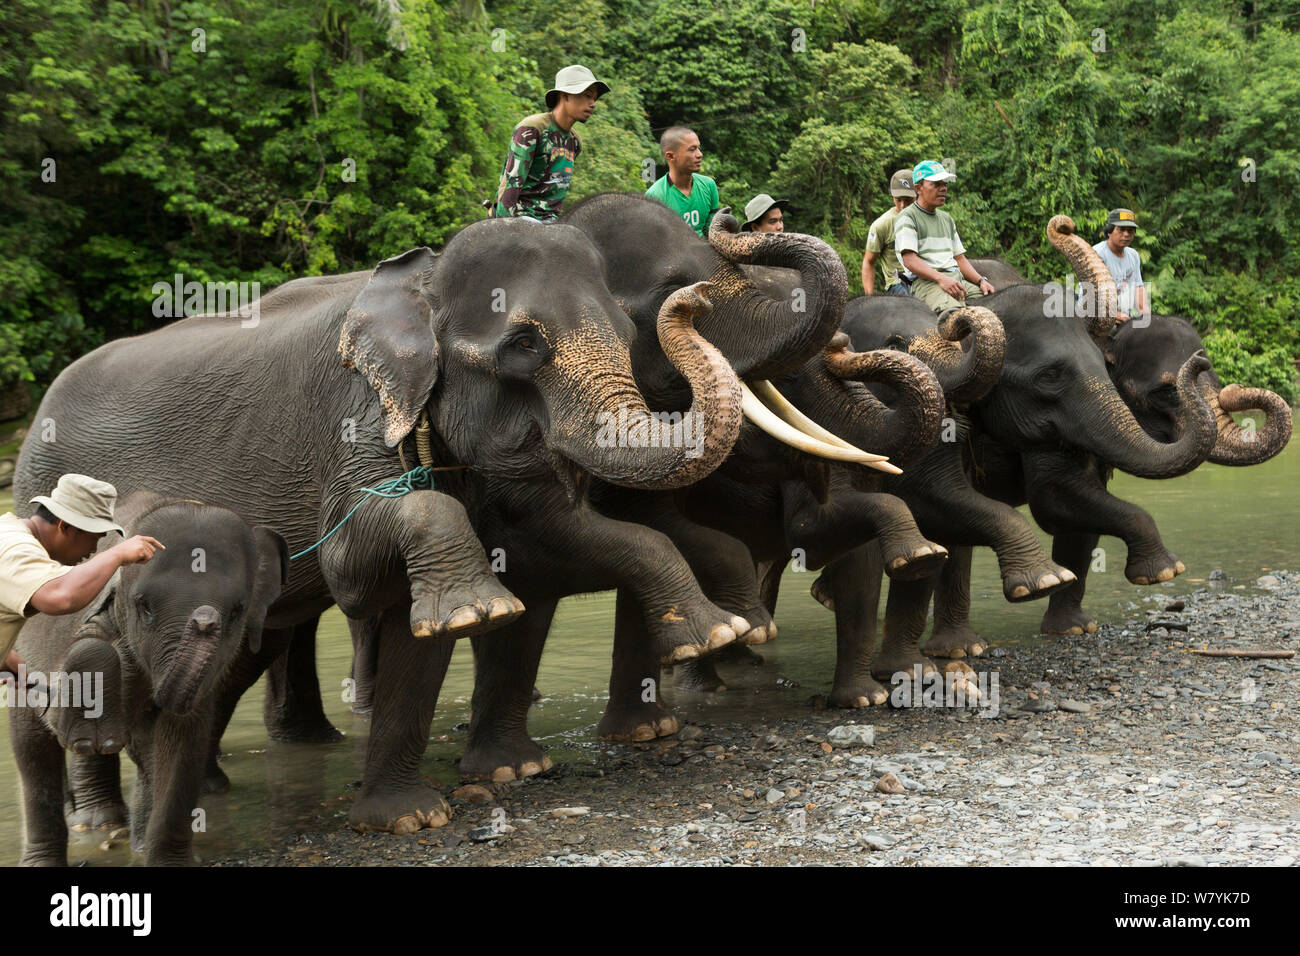 Elefanti di Sumatra (Elephas maximus sumatranus) ha insegnato per sollevare i piedi contemporaneamente. Riabilitato e gli elefanti addomesticati utilizzati dai rangers per pattugliare la foresta e a giocare con i turisti. Tangkahan, Gunung Leuser NP, Sumatra, Indonesia. Foto Stock